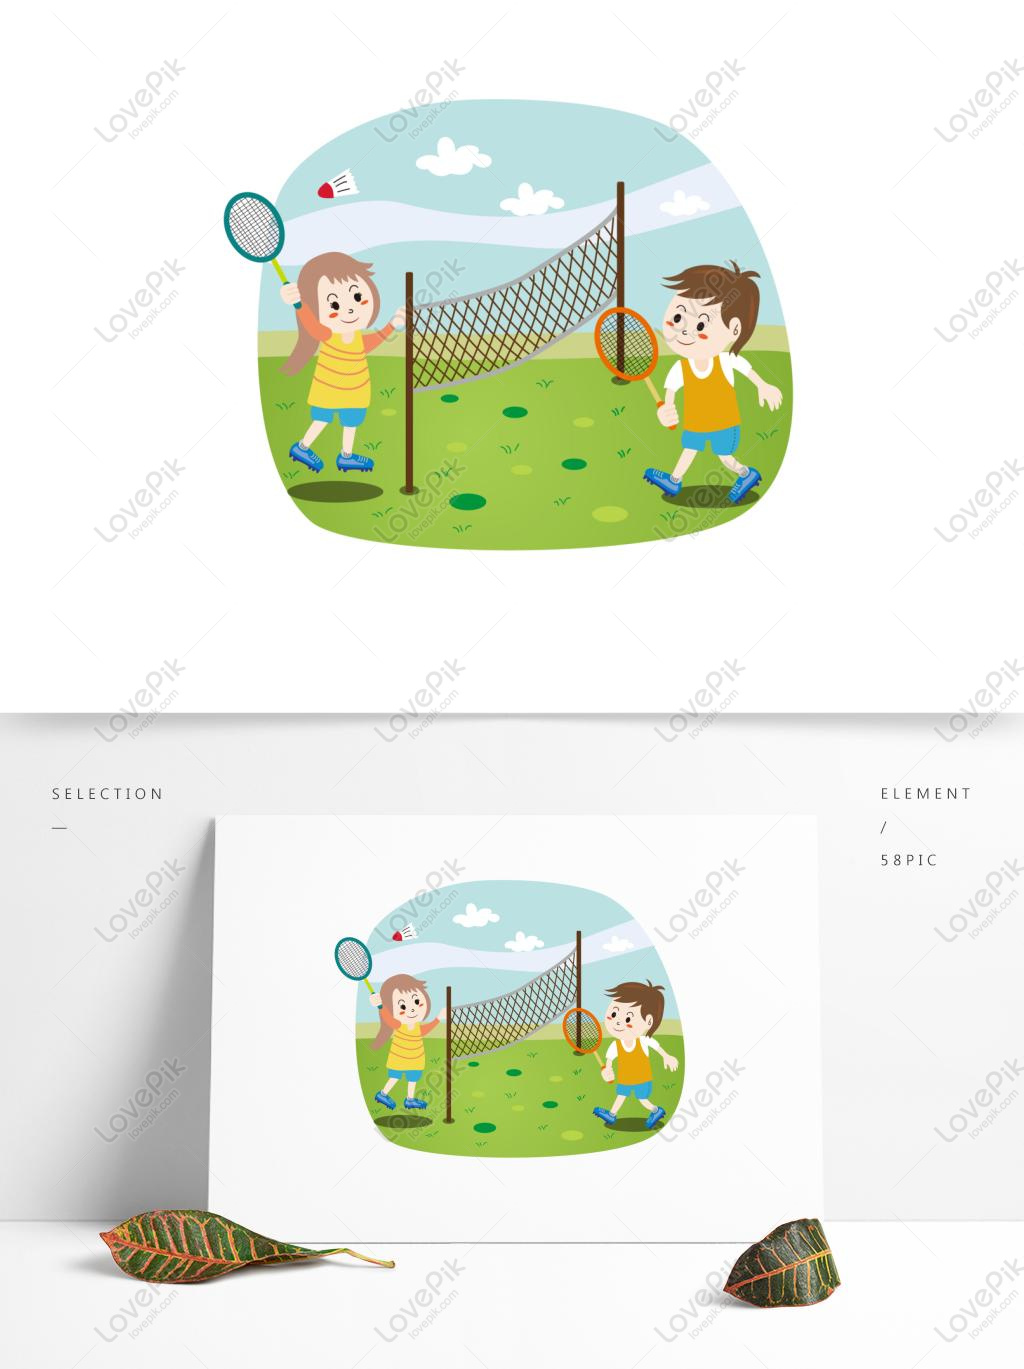 Kartun Anak Anak Yang Lucu Bermain Bulutangkis Elemen Olahraga K Gambar Unduh Gratis Grafik 732309093 Format Gambar AI Lovepikcom